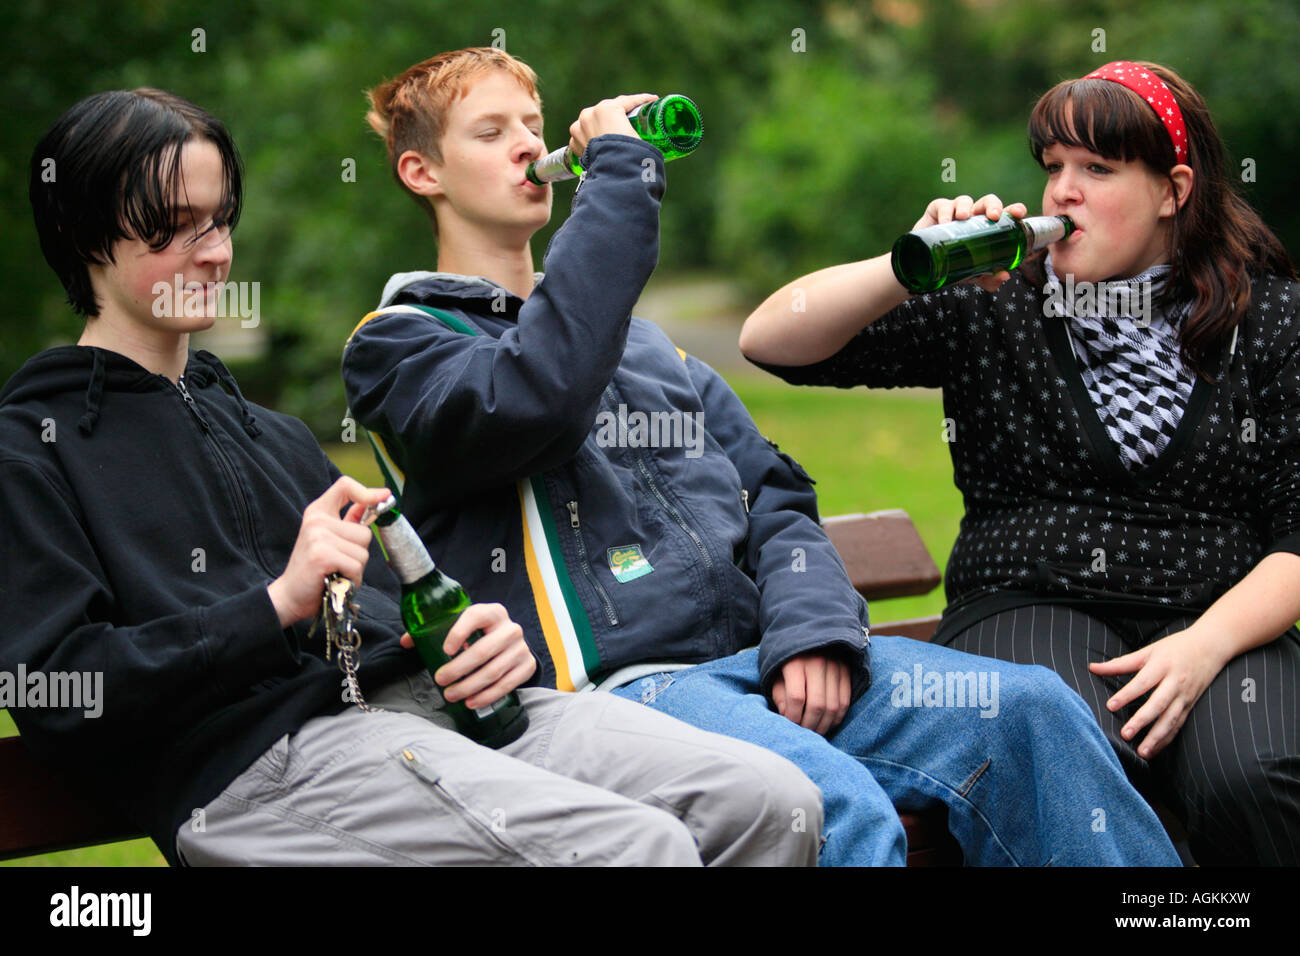 drei Jugendliche trinken Bier in einem park Stockfotografie - Alamy